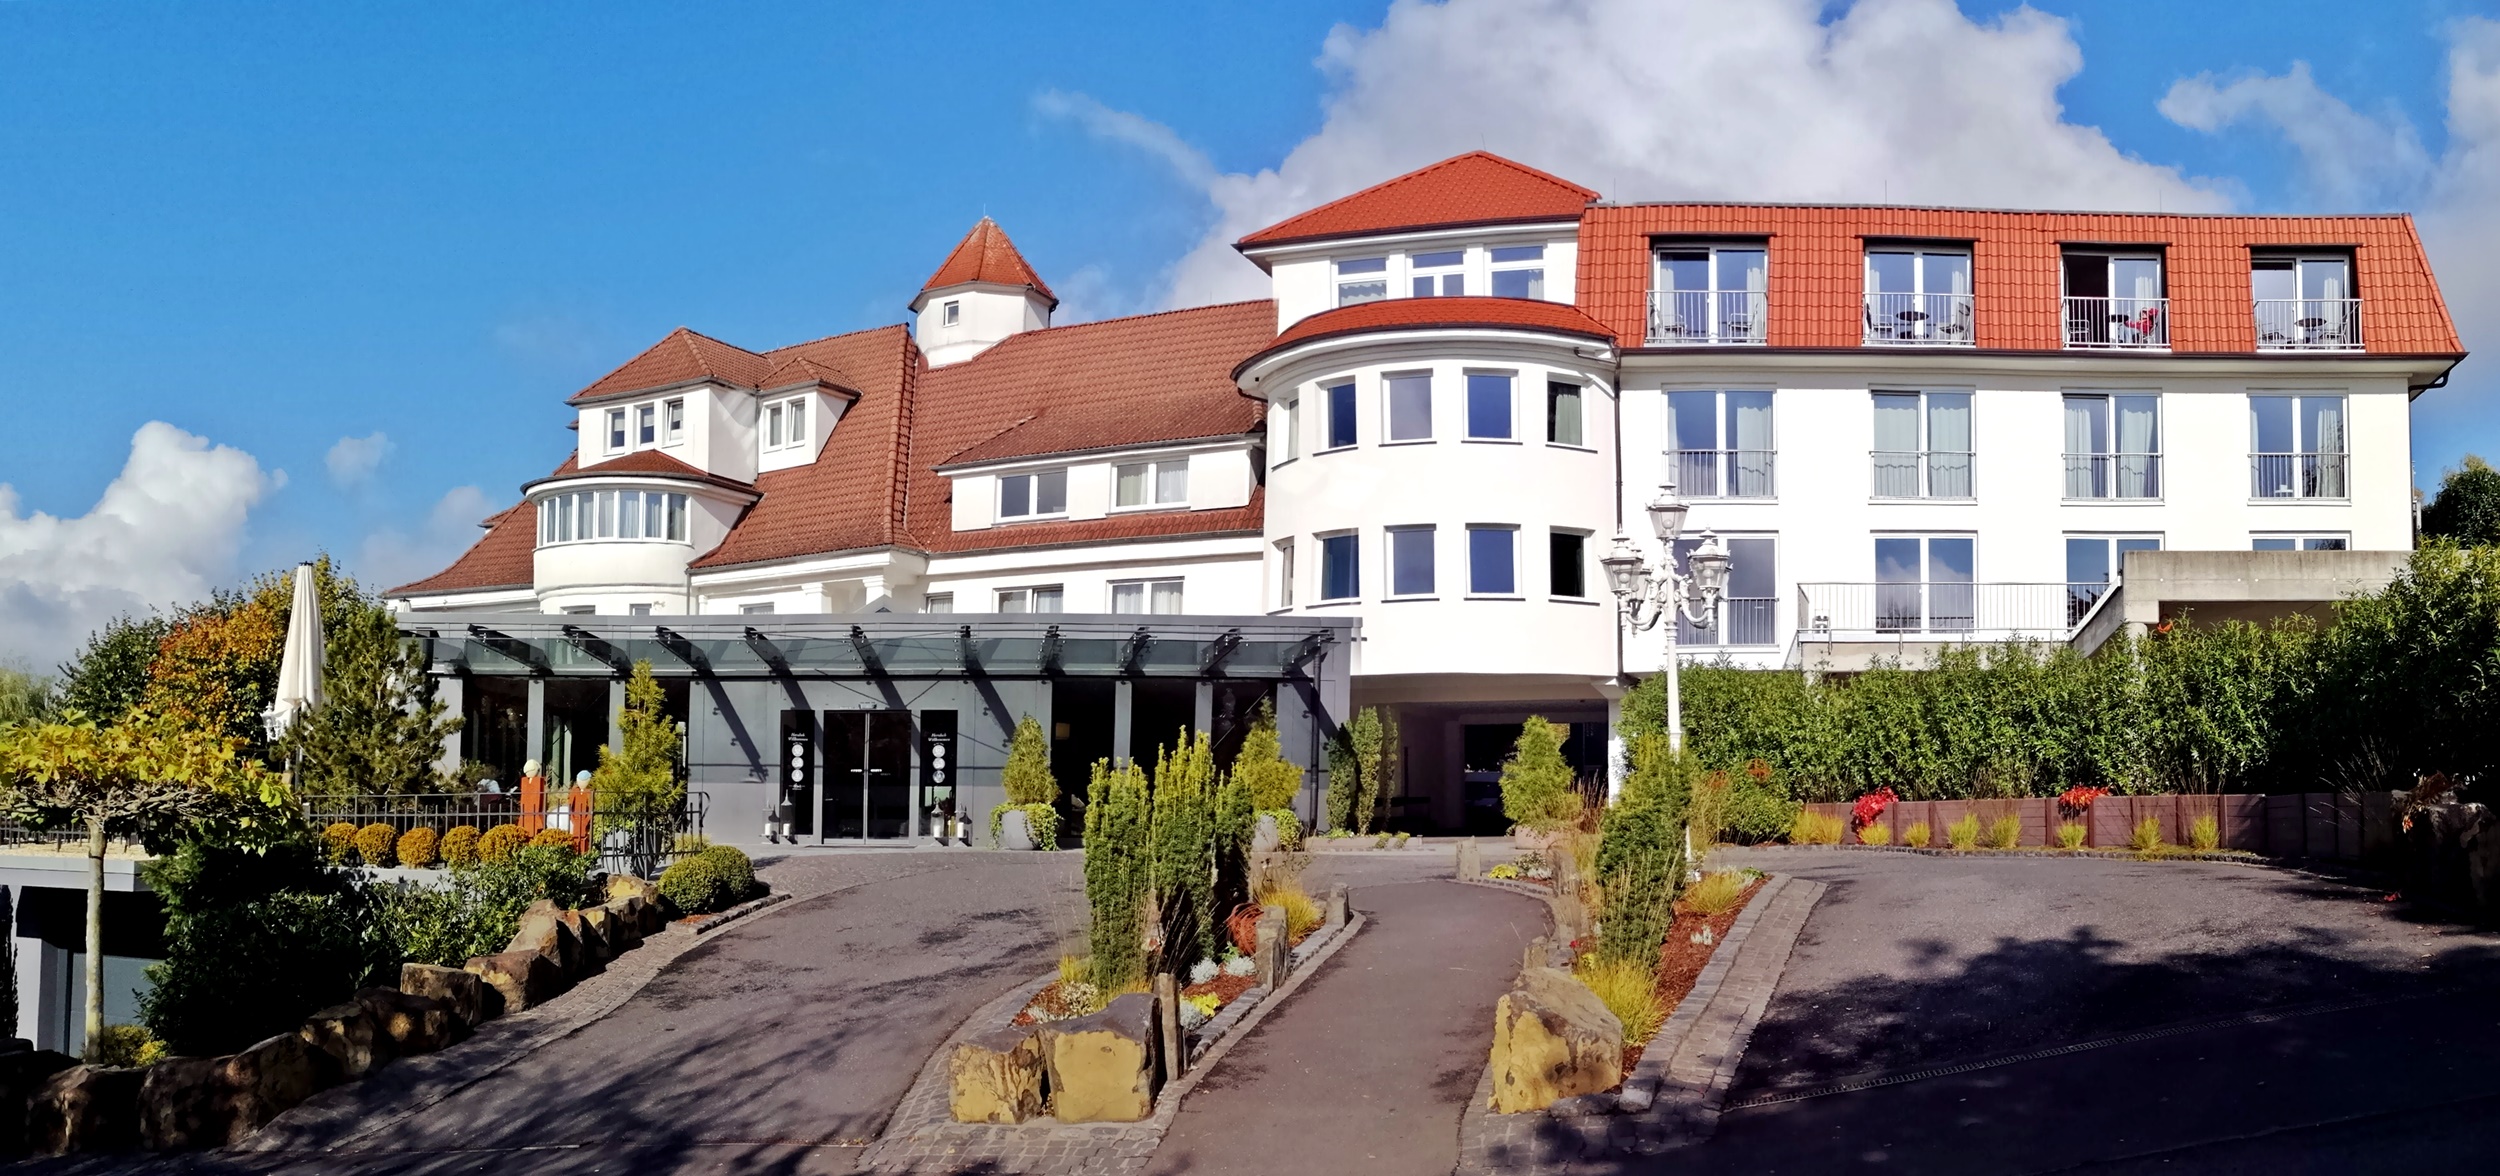 Wellness-Hotel Heinz im Westerwald